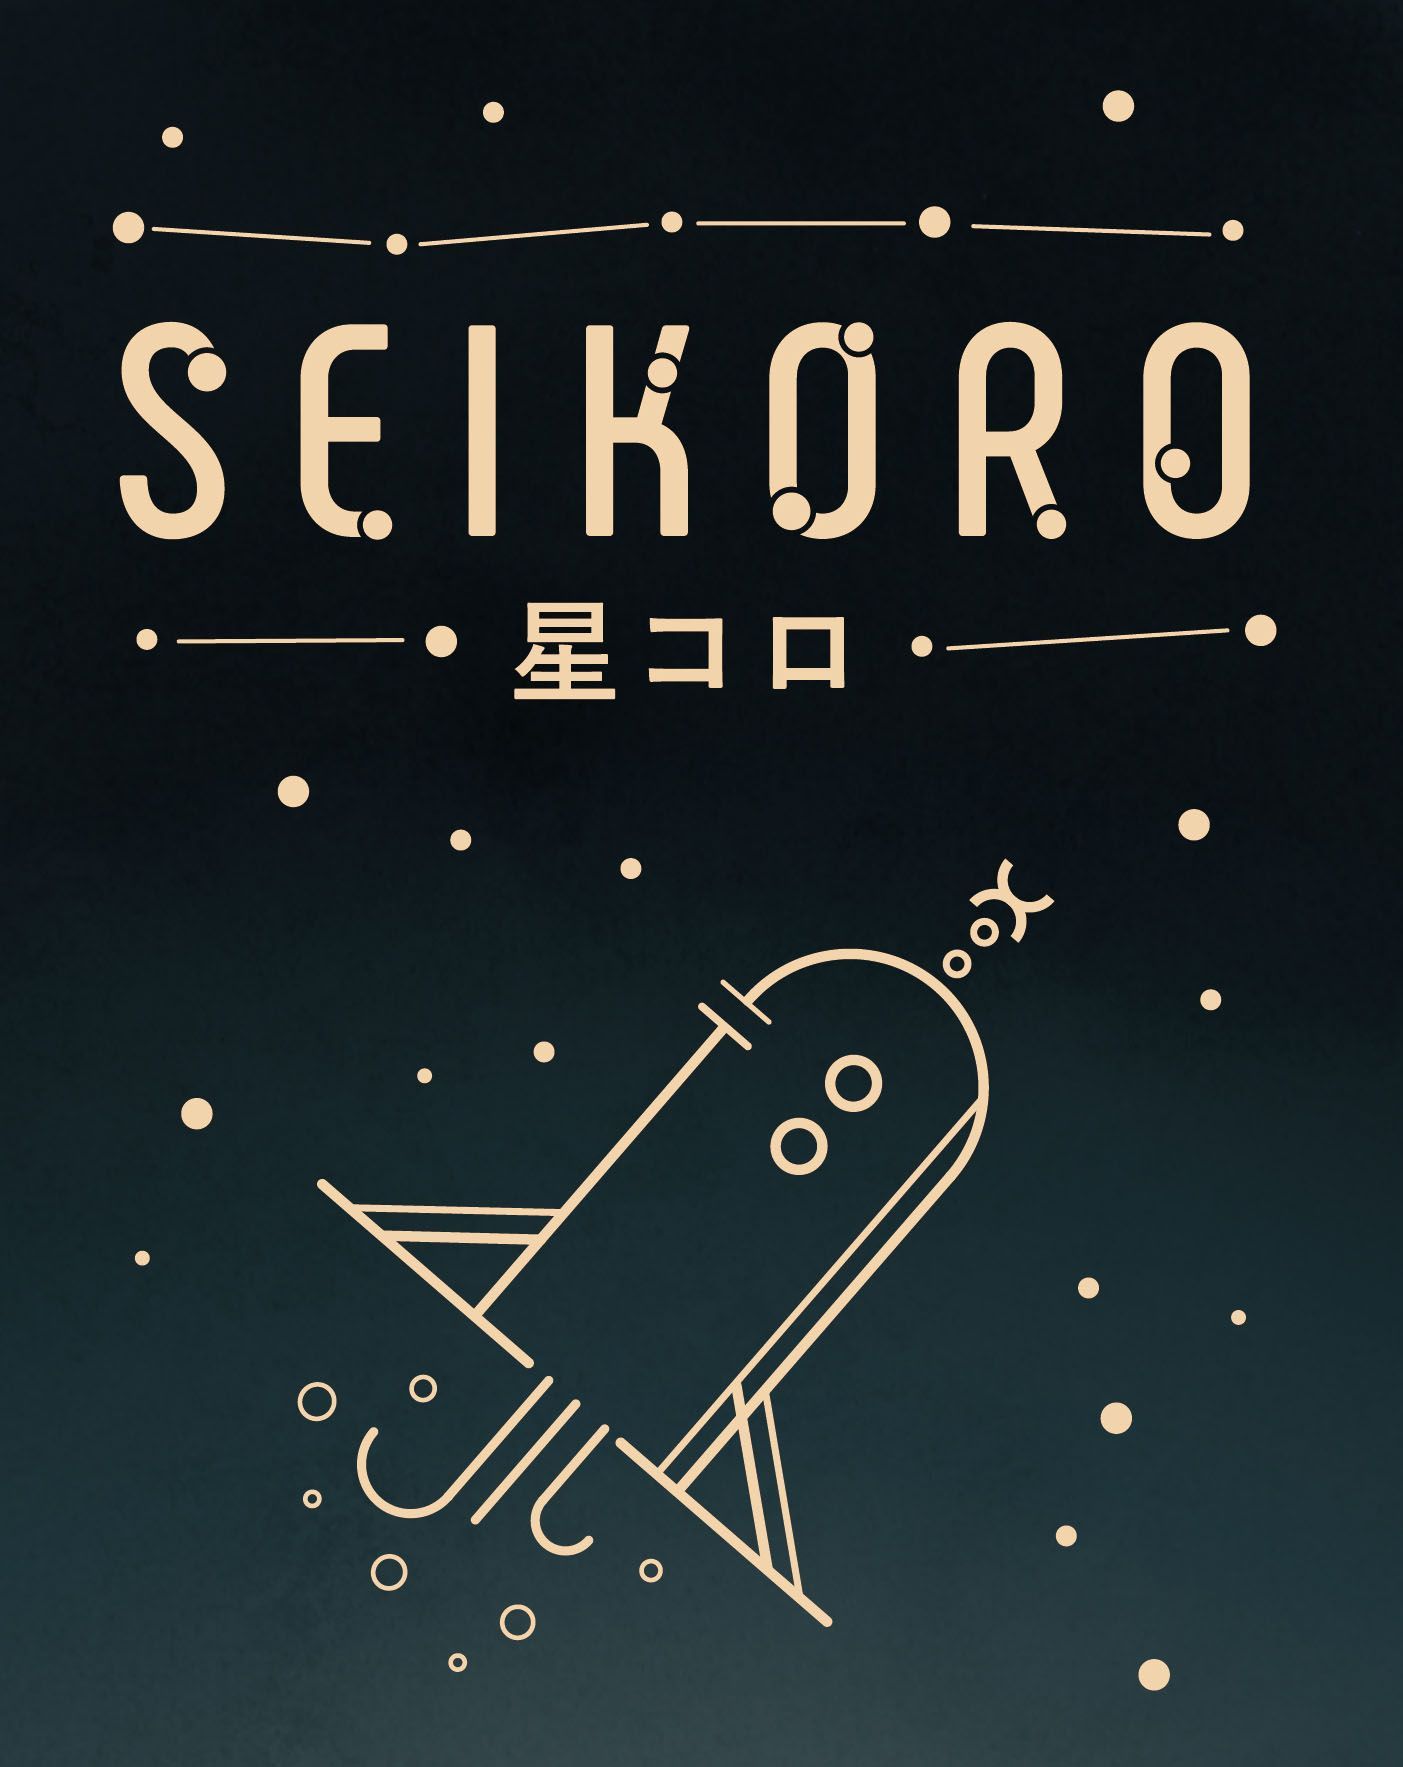 Seikoro (星コロ)